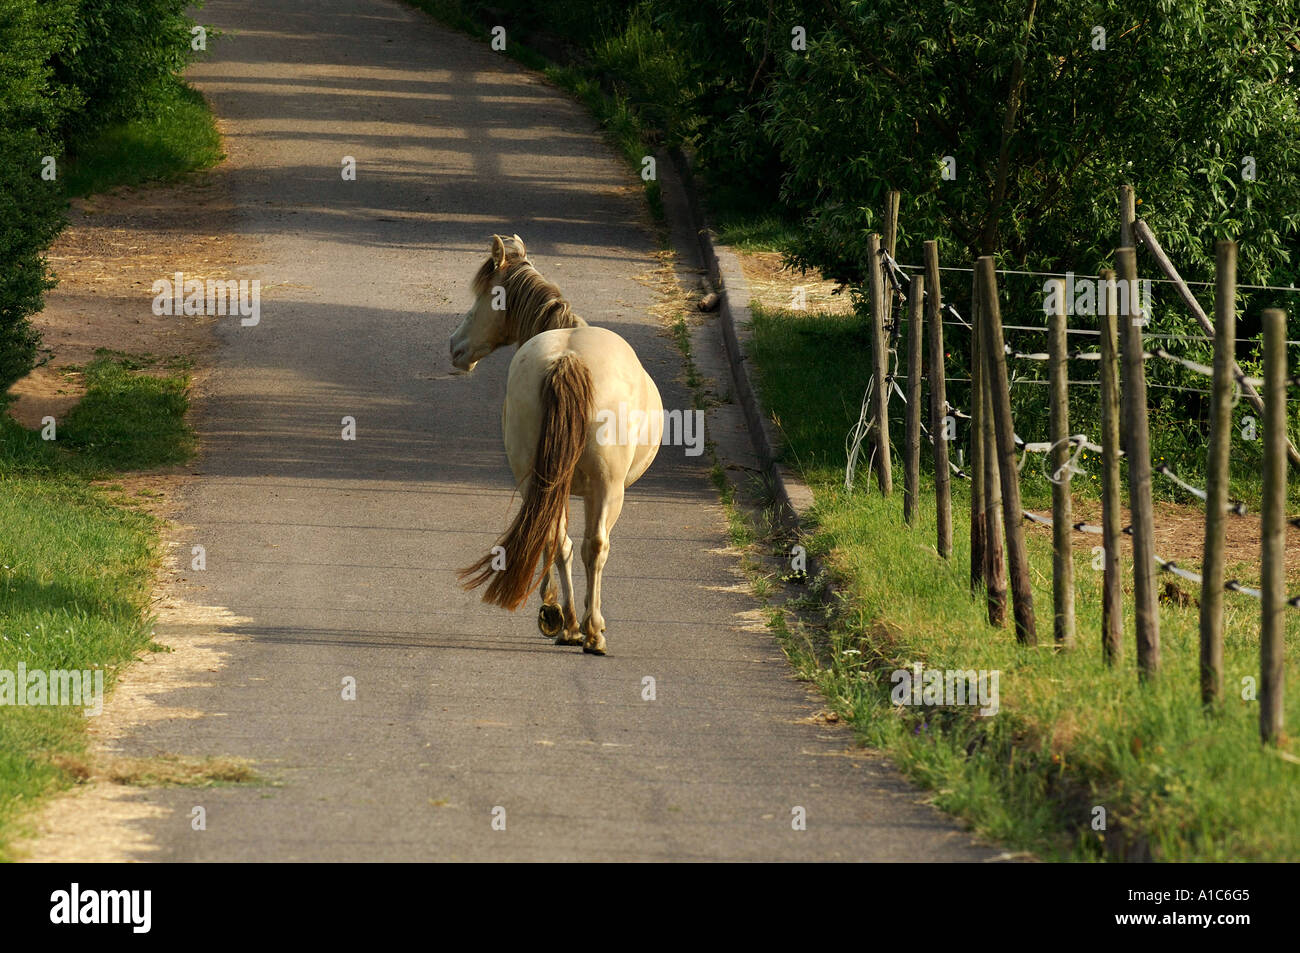 Cheval domestique. Un seul cheval marche non accompagné et sans halter dans une rue, vue de derrière. Allemagne Banque D'Images